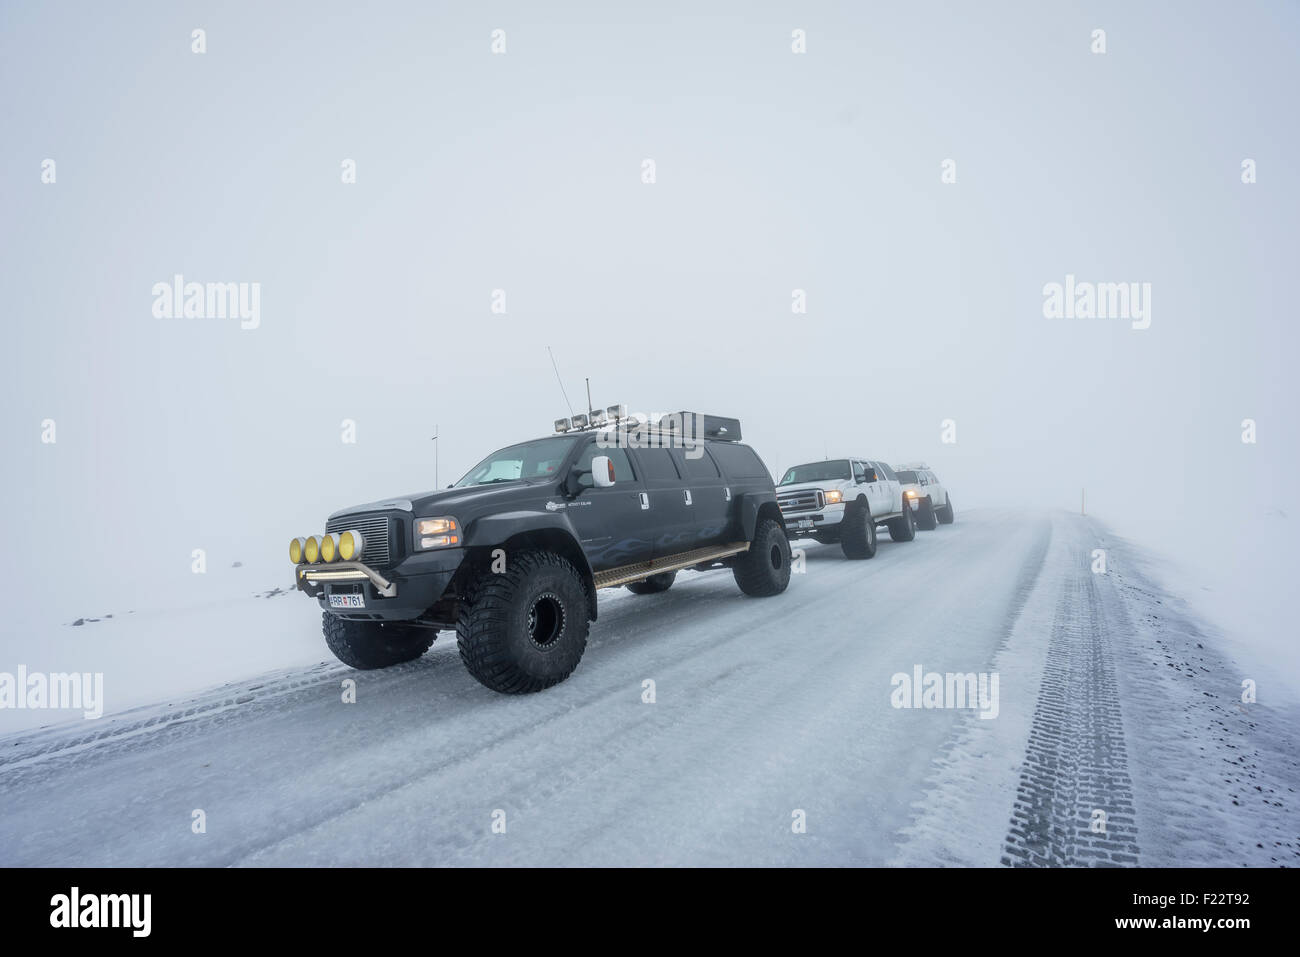 Super Jeep tour en hiver, hauts plateaux du centre, de l'Islande Banque D'Images